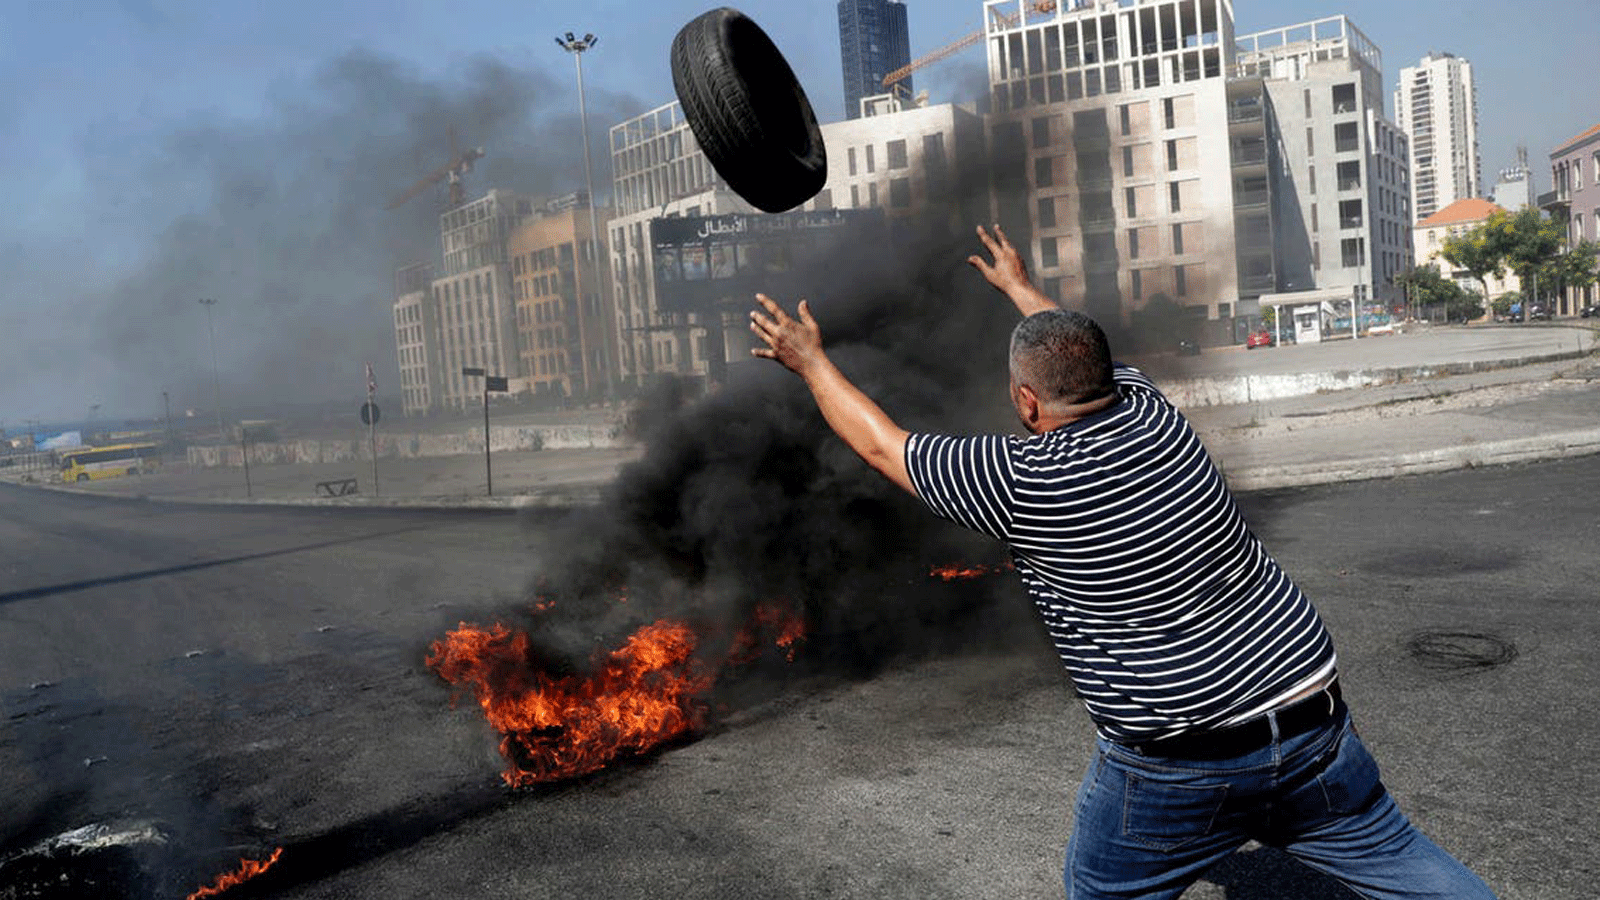 متظاهر يحرق الإطارات لإغلاق ساحة الشهداء في العاصمة اللبنانية بيروت في 26 حزيران / يونيو 2021، احتجاجاً على الأزمة المعيشية وتقاعس السلطة